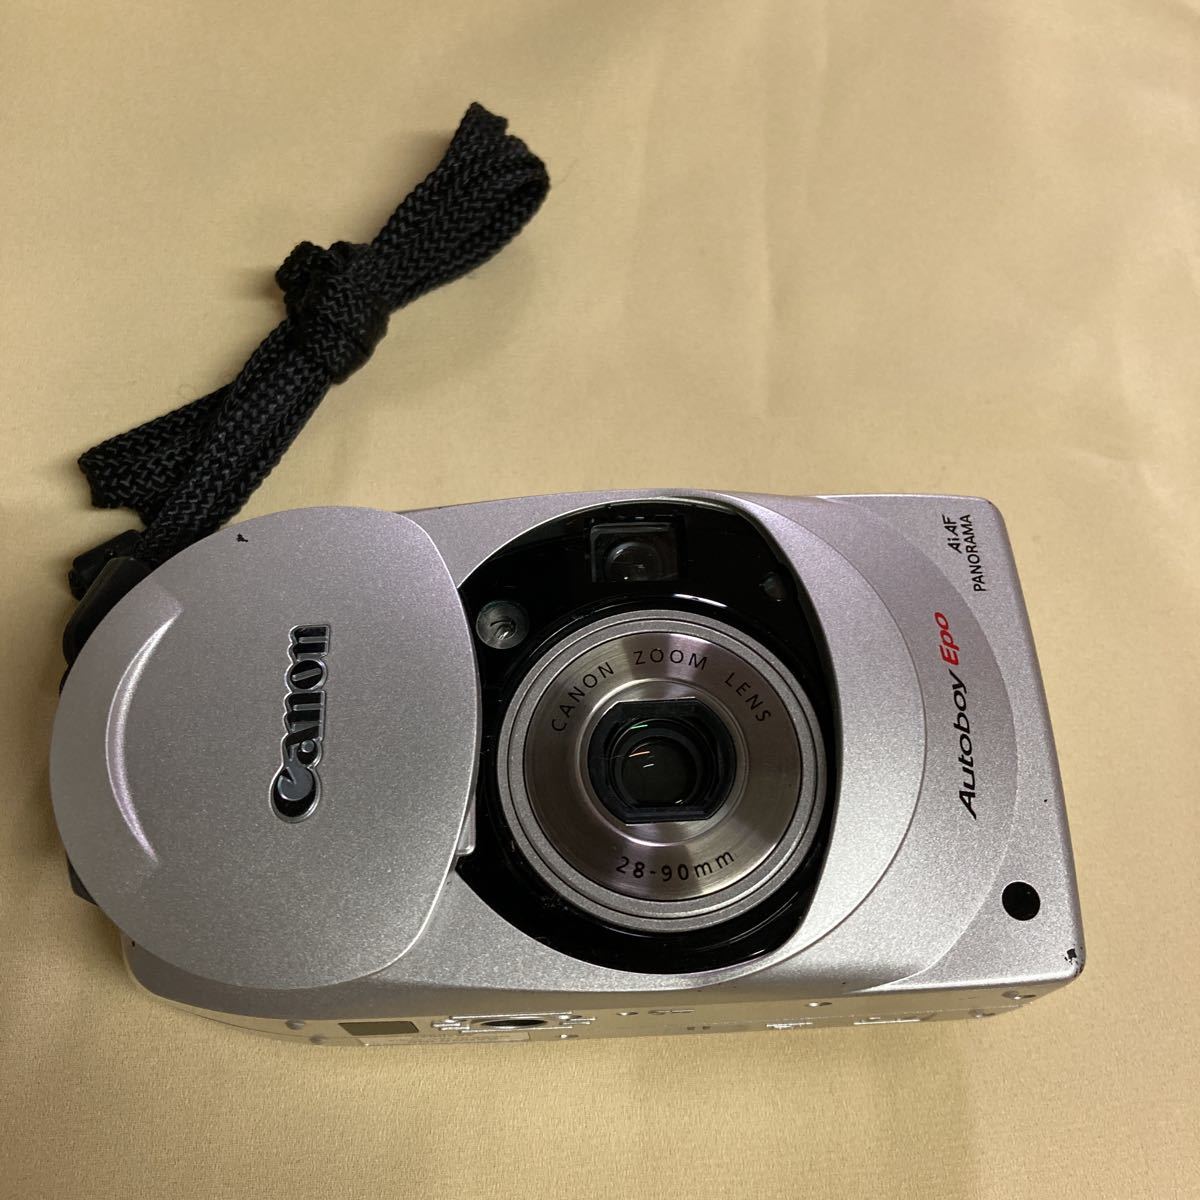 Canon Autoboy Epo 28-90mm コンパクトカメラ フィルムカメラ レトロ キャノン レア 名機の画像1